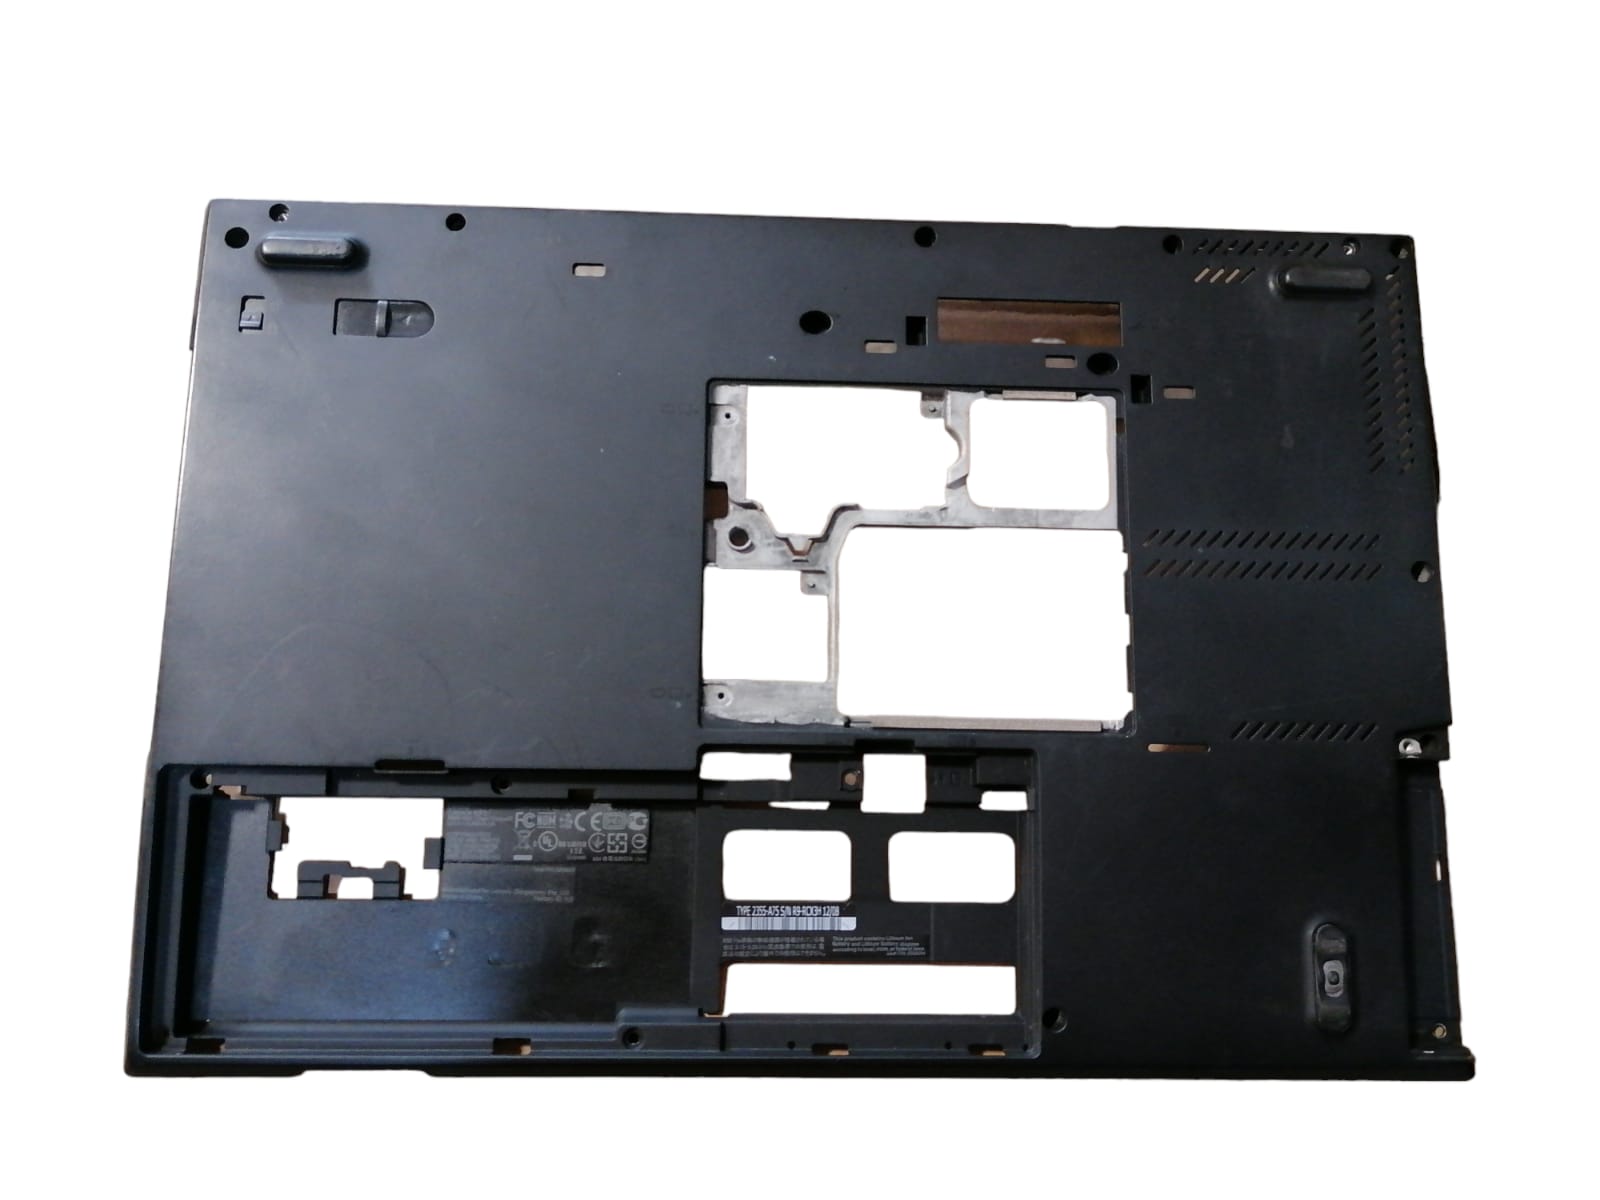 Carcasa Base Inferior Para Laptop Lenovo T430s